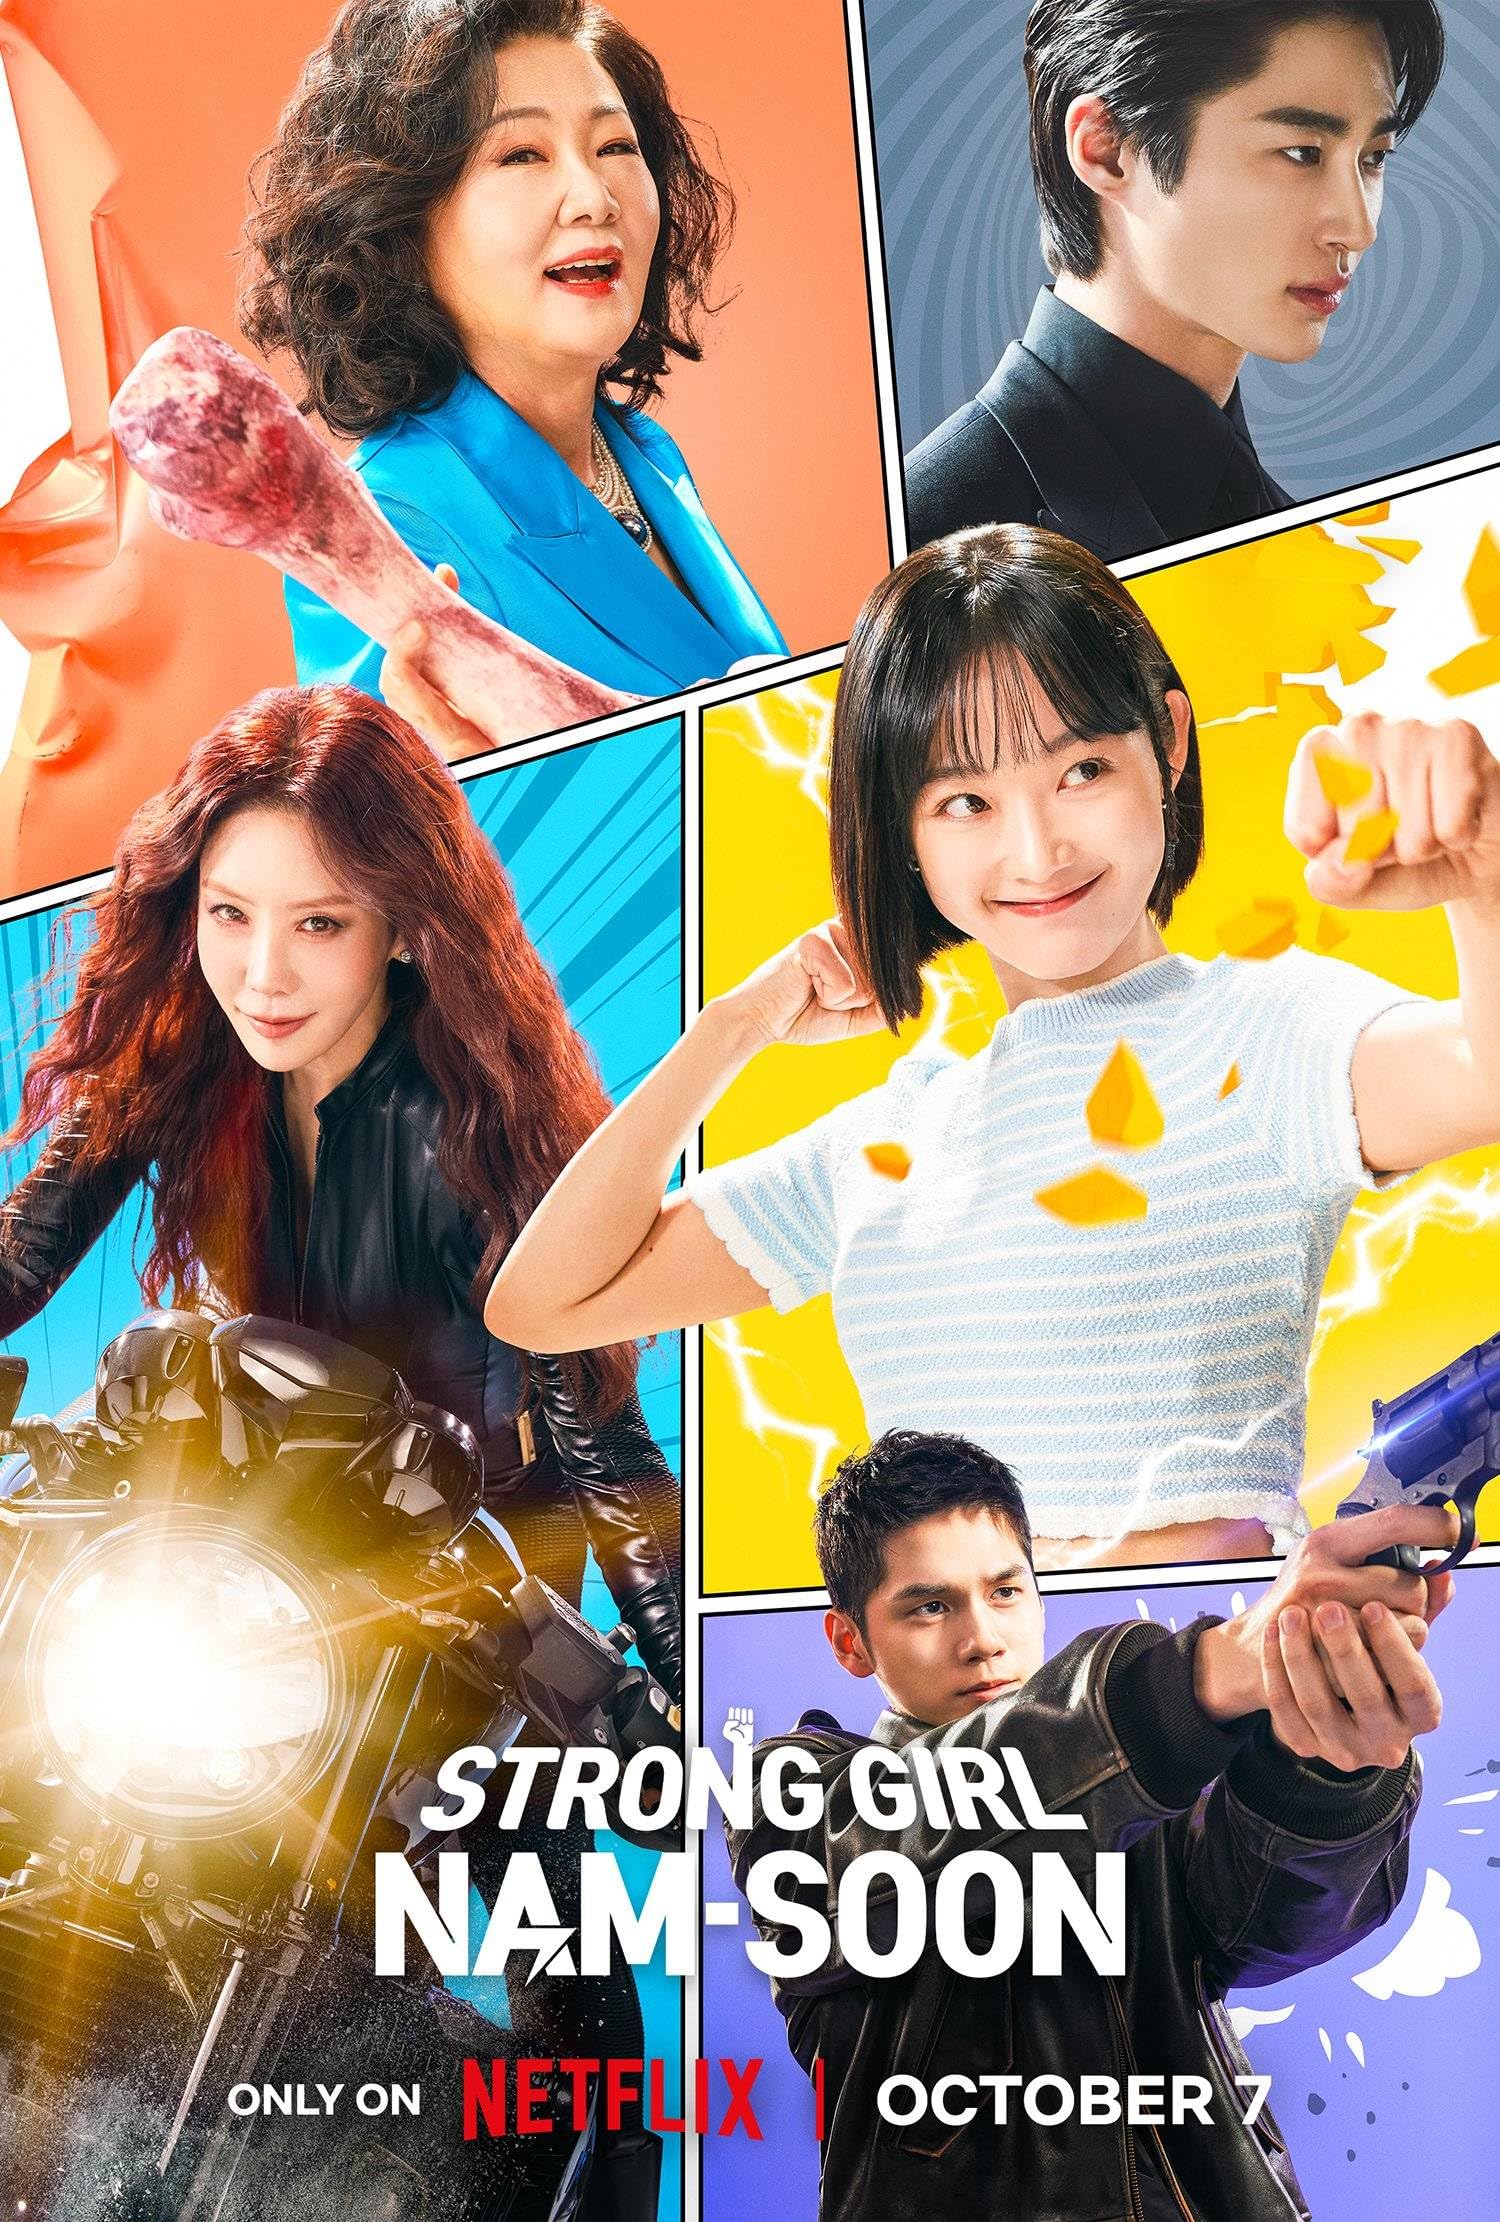 مسلسل الفتاة القوية نام سون Strong Girl Nam-soon الحلقة 4 مترجمة